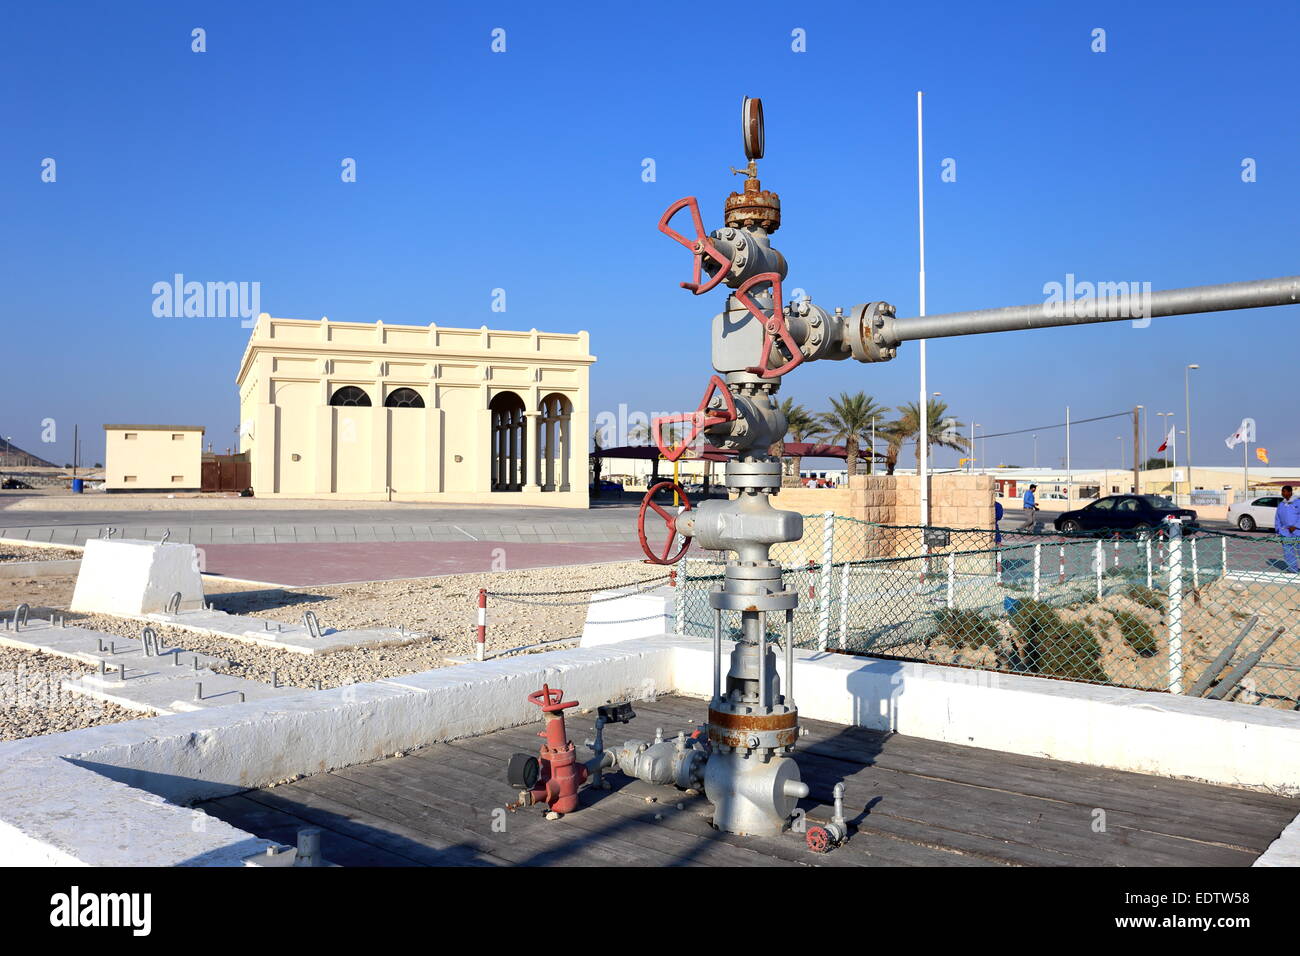 Nombre de puits de pétrole 1 à l'avant-plan avec le Musée de l'huile à l'arrière-plan, Bahreïn Banque D'Images